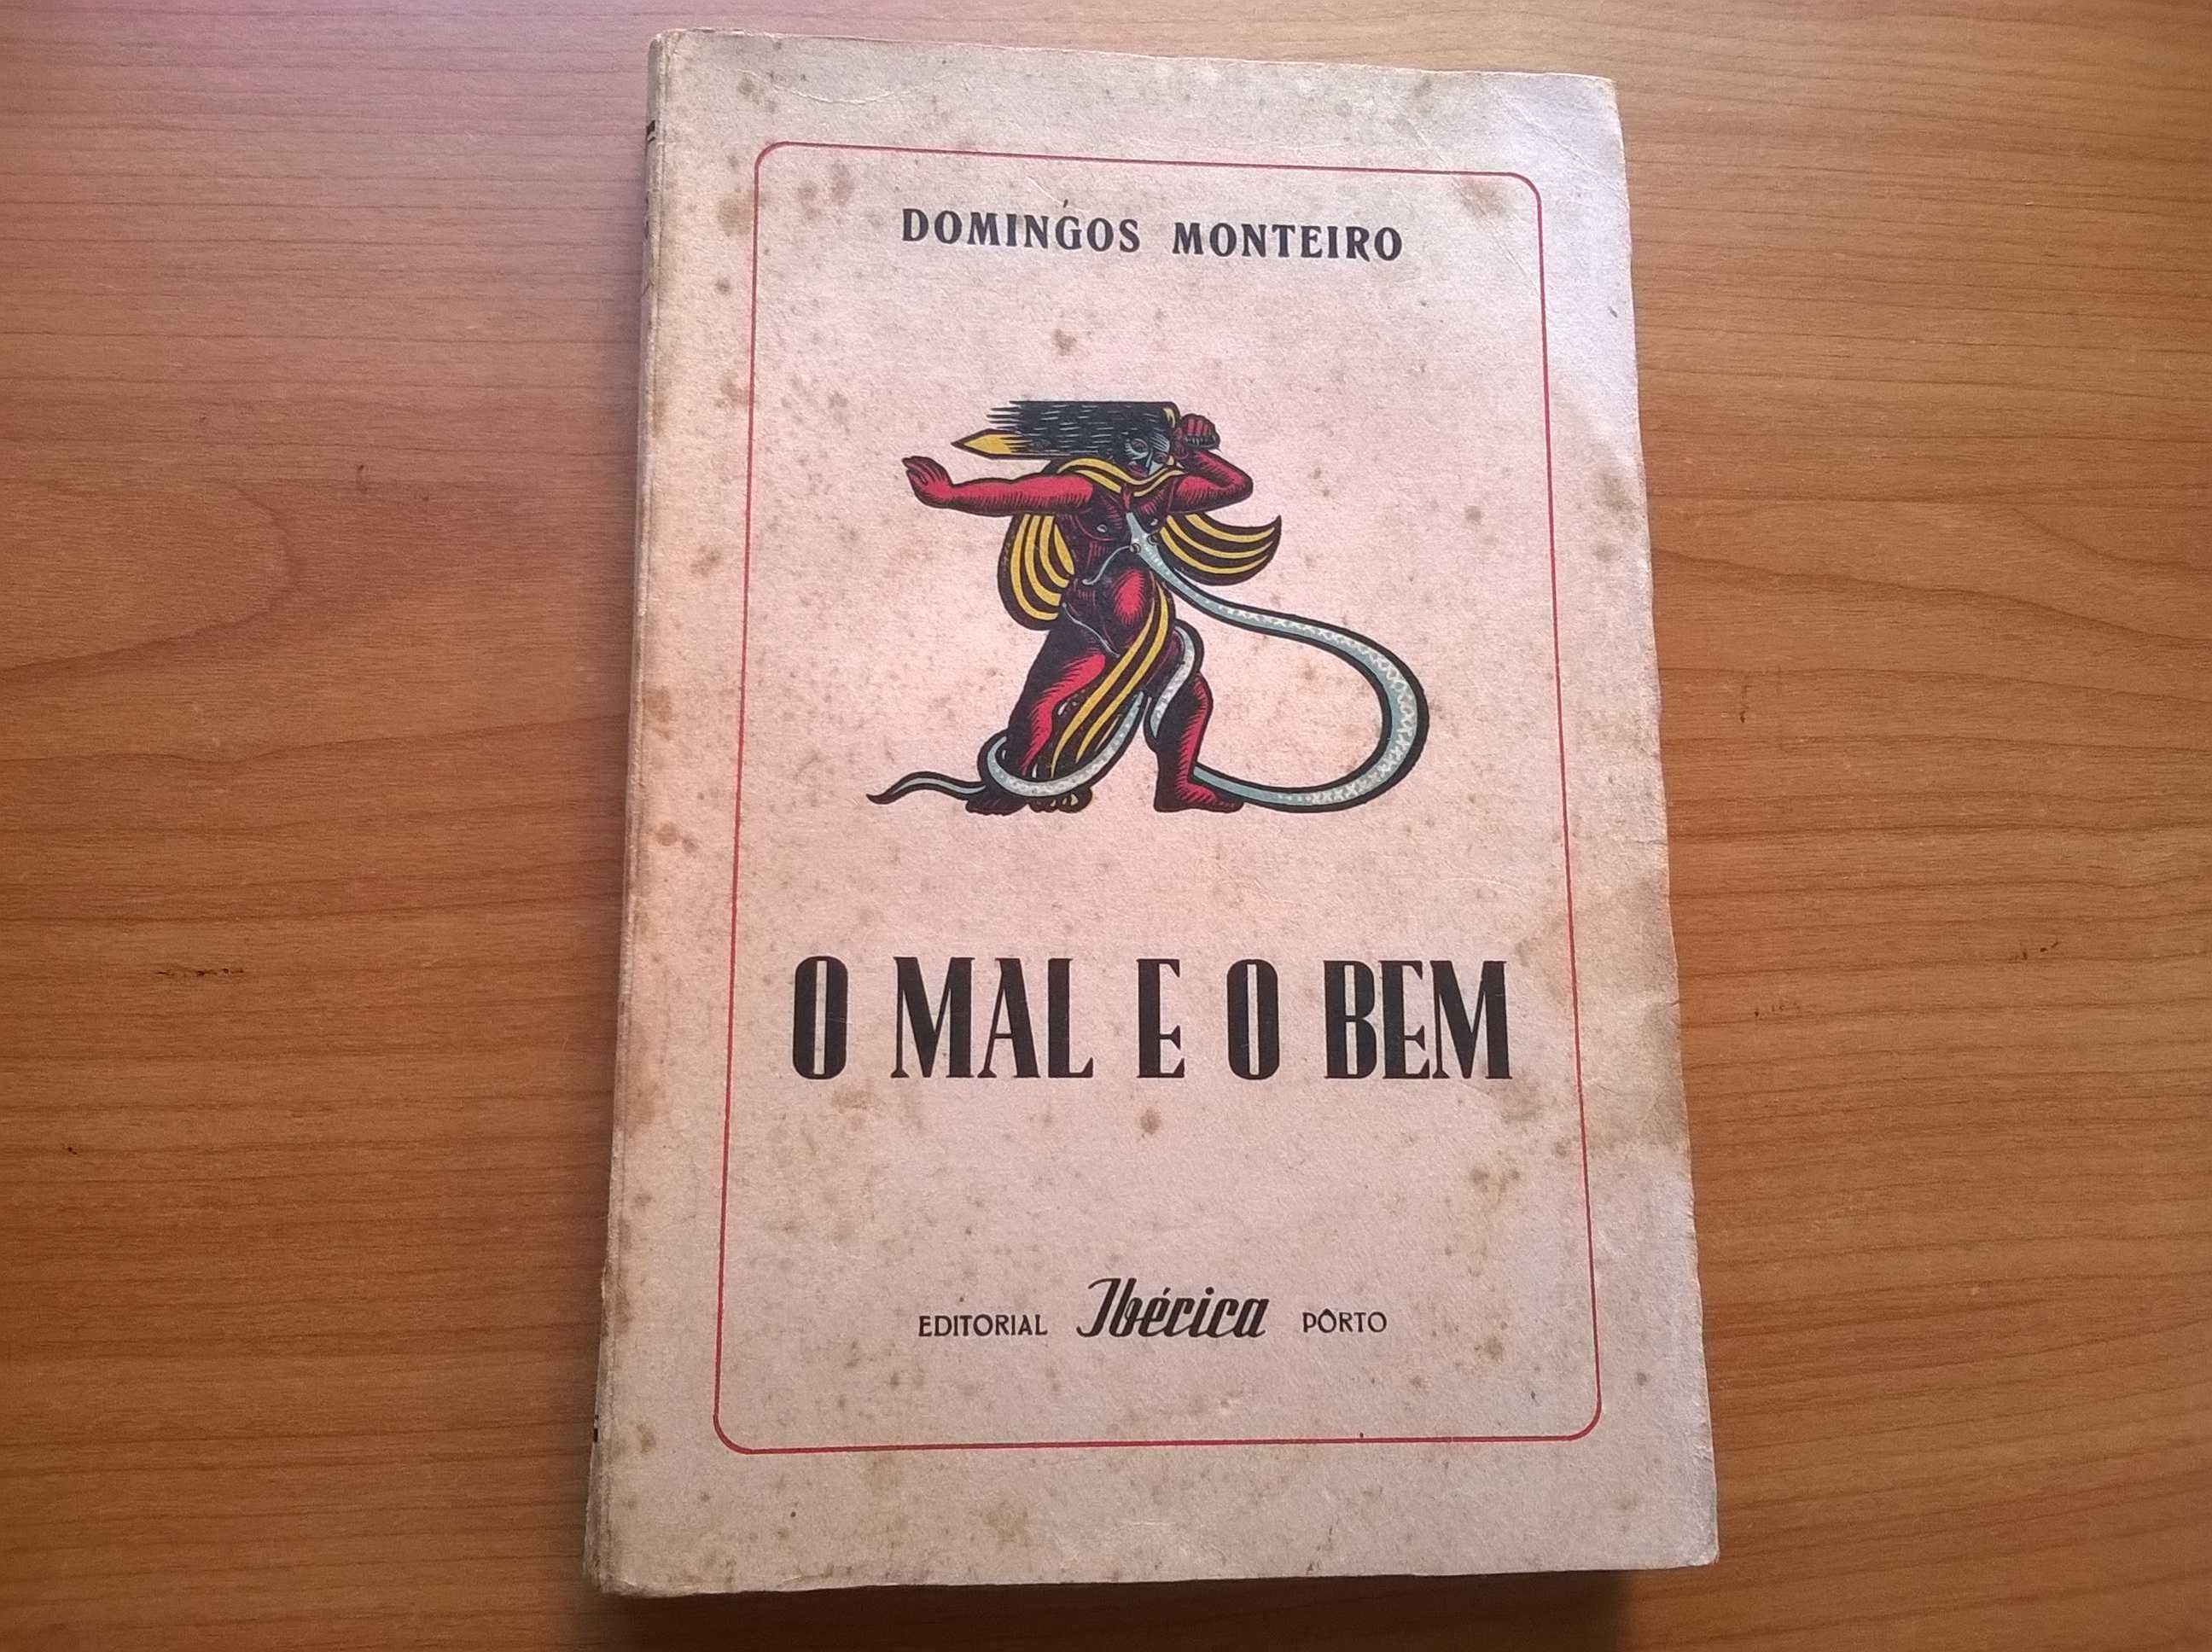 O Mal e o Bem (1.ª edição) - Domingos Monteiro (portes grátis)